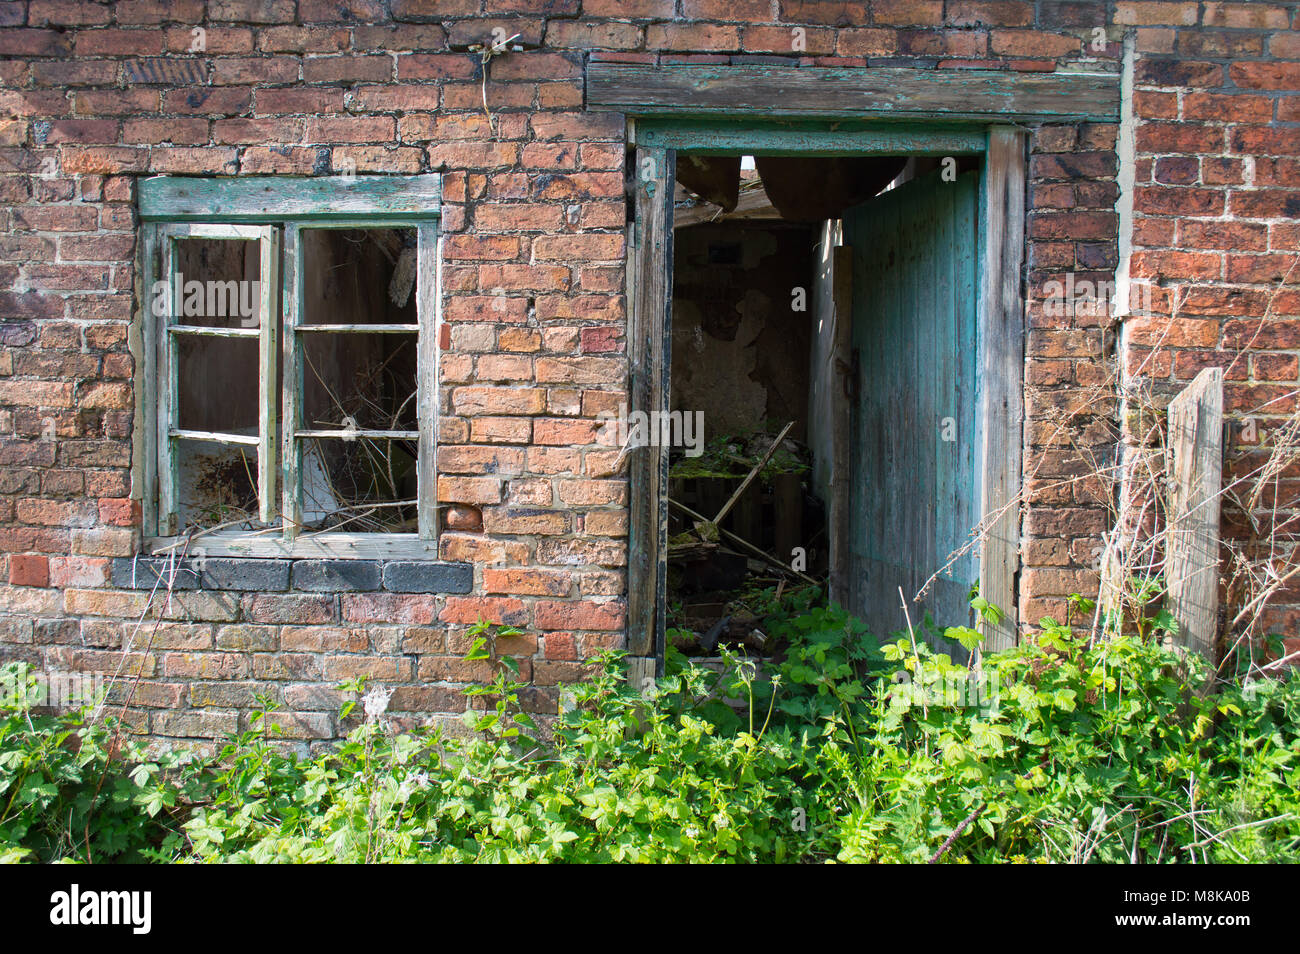 Une vieille épave, a pourri la fenêtre vert et le cadre de la porte contre un mur de brique rouge, avec des plantes et envahi par les ronces. Banque D'Images